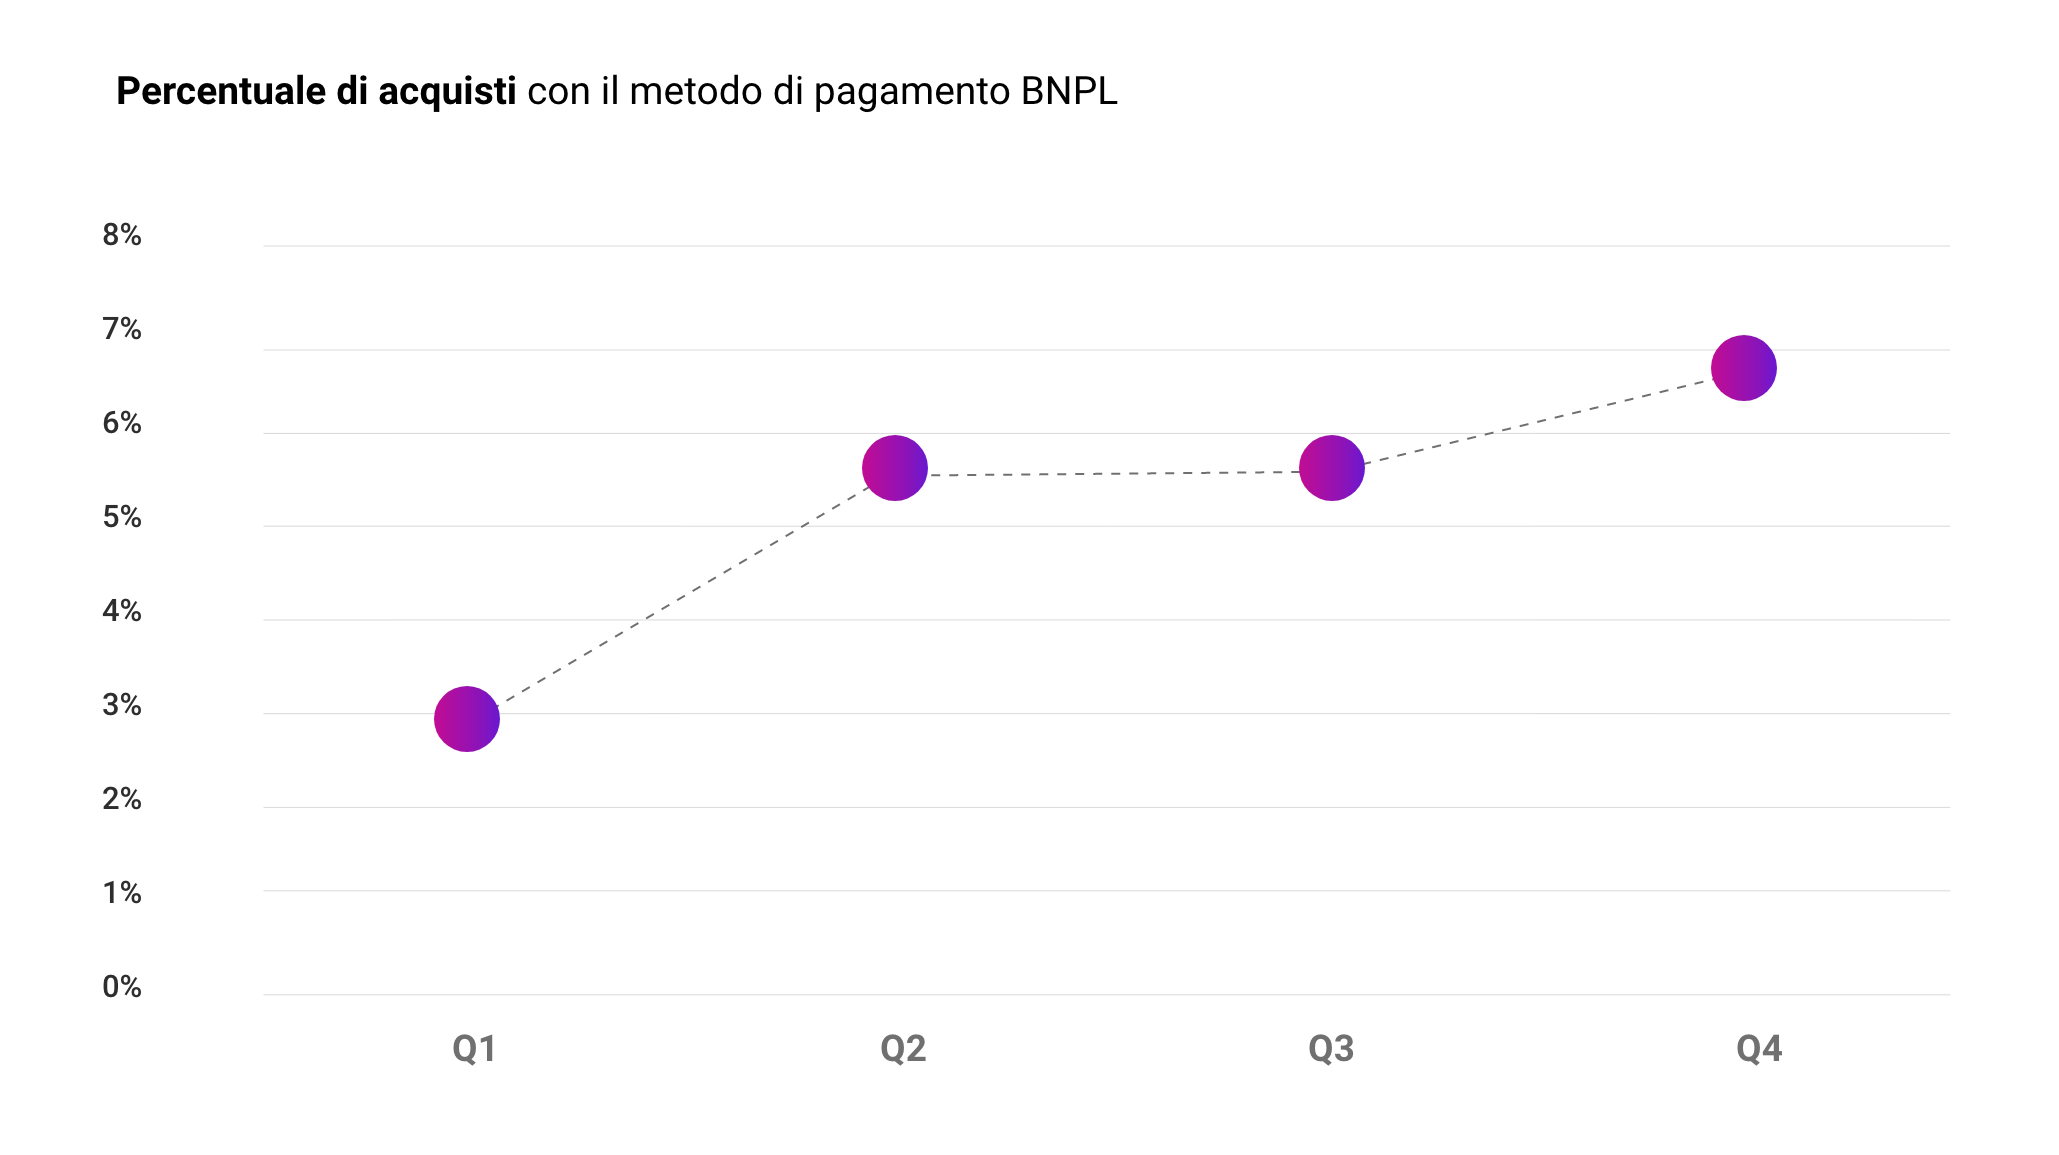 Percentuale acquisti con il metodo di pagamento BNPL